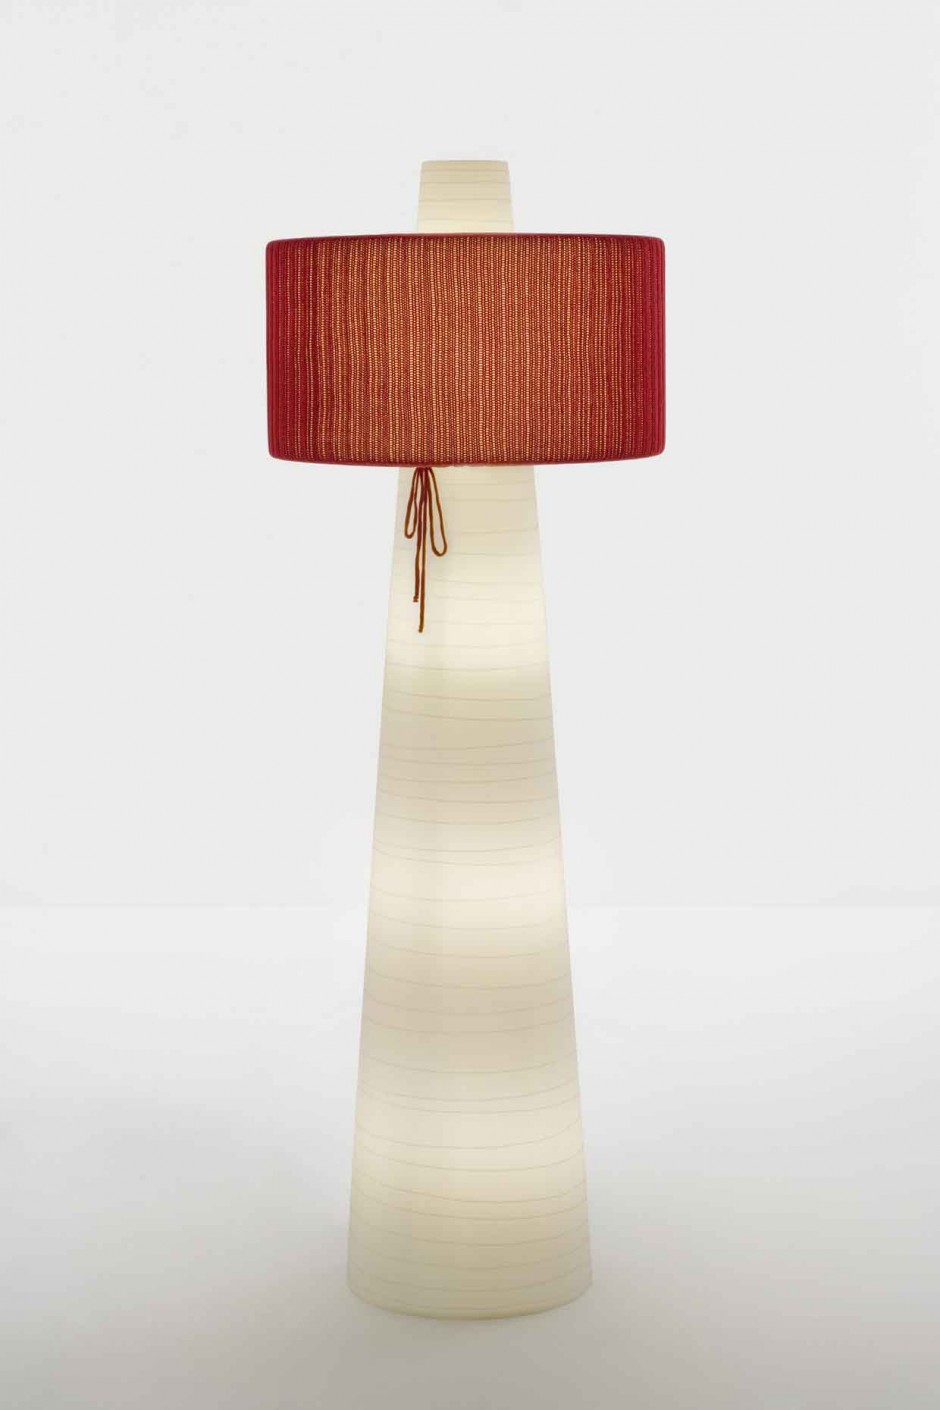 UP Floor Lamp Lamps Design